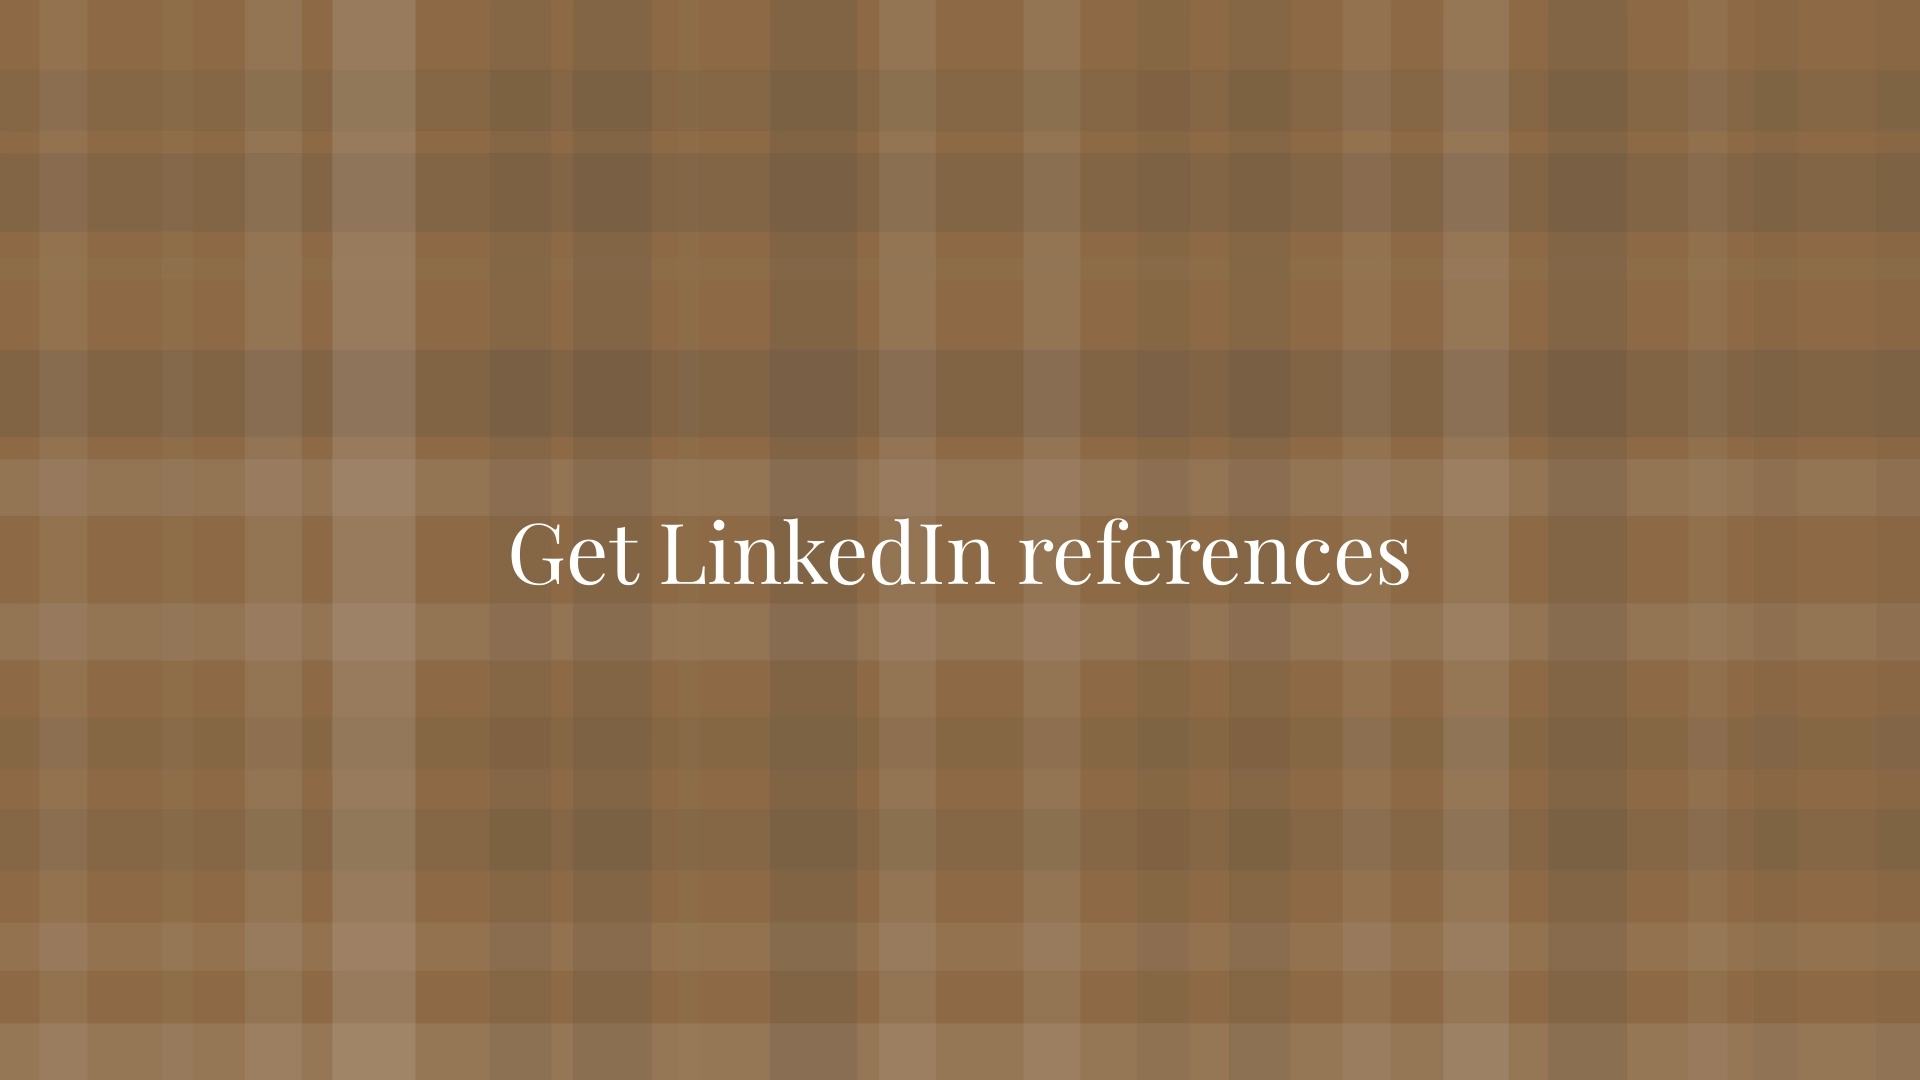 Get LinkedIn references